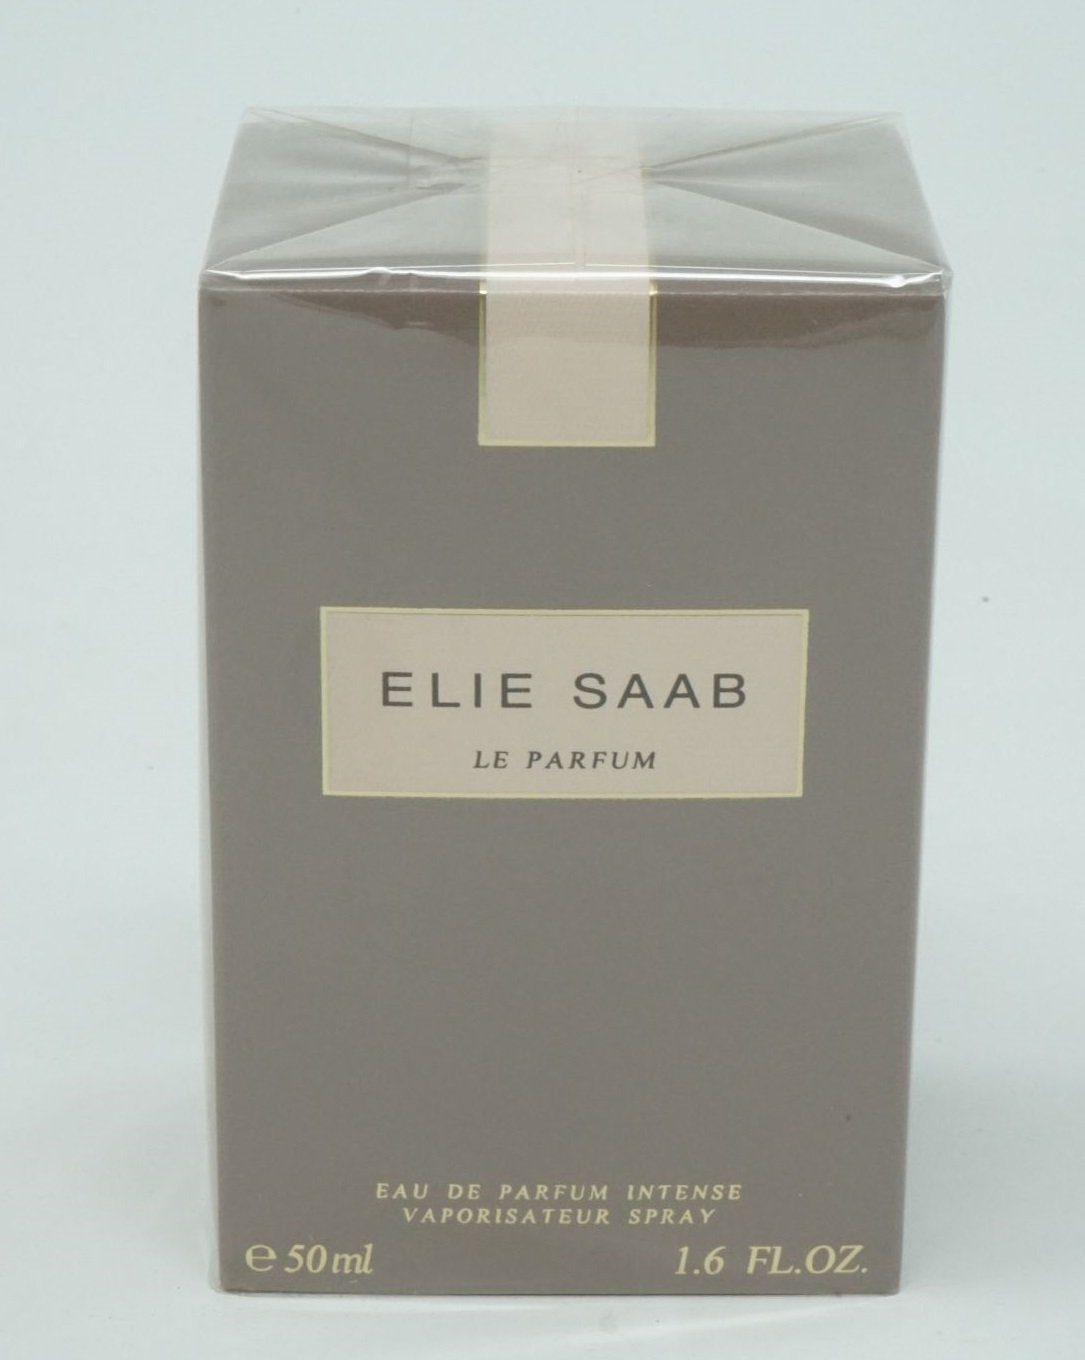 ELIE SAAB Eau de Parfum Elie Saab Le Parfum Eau de parfum Intense 50ml